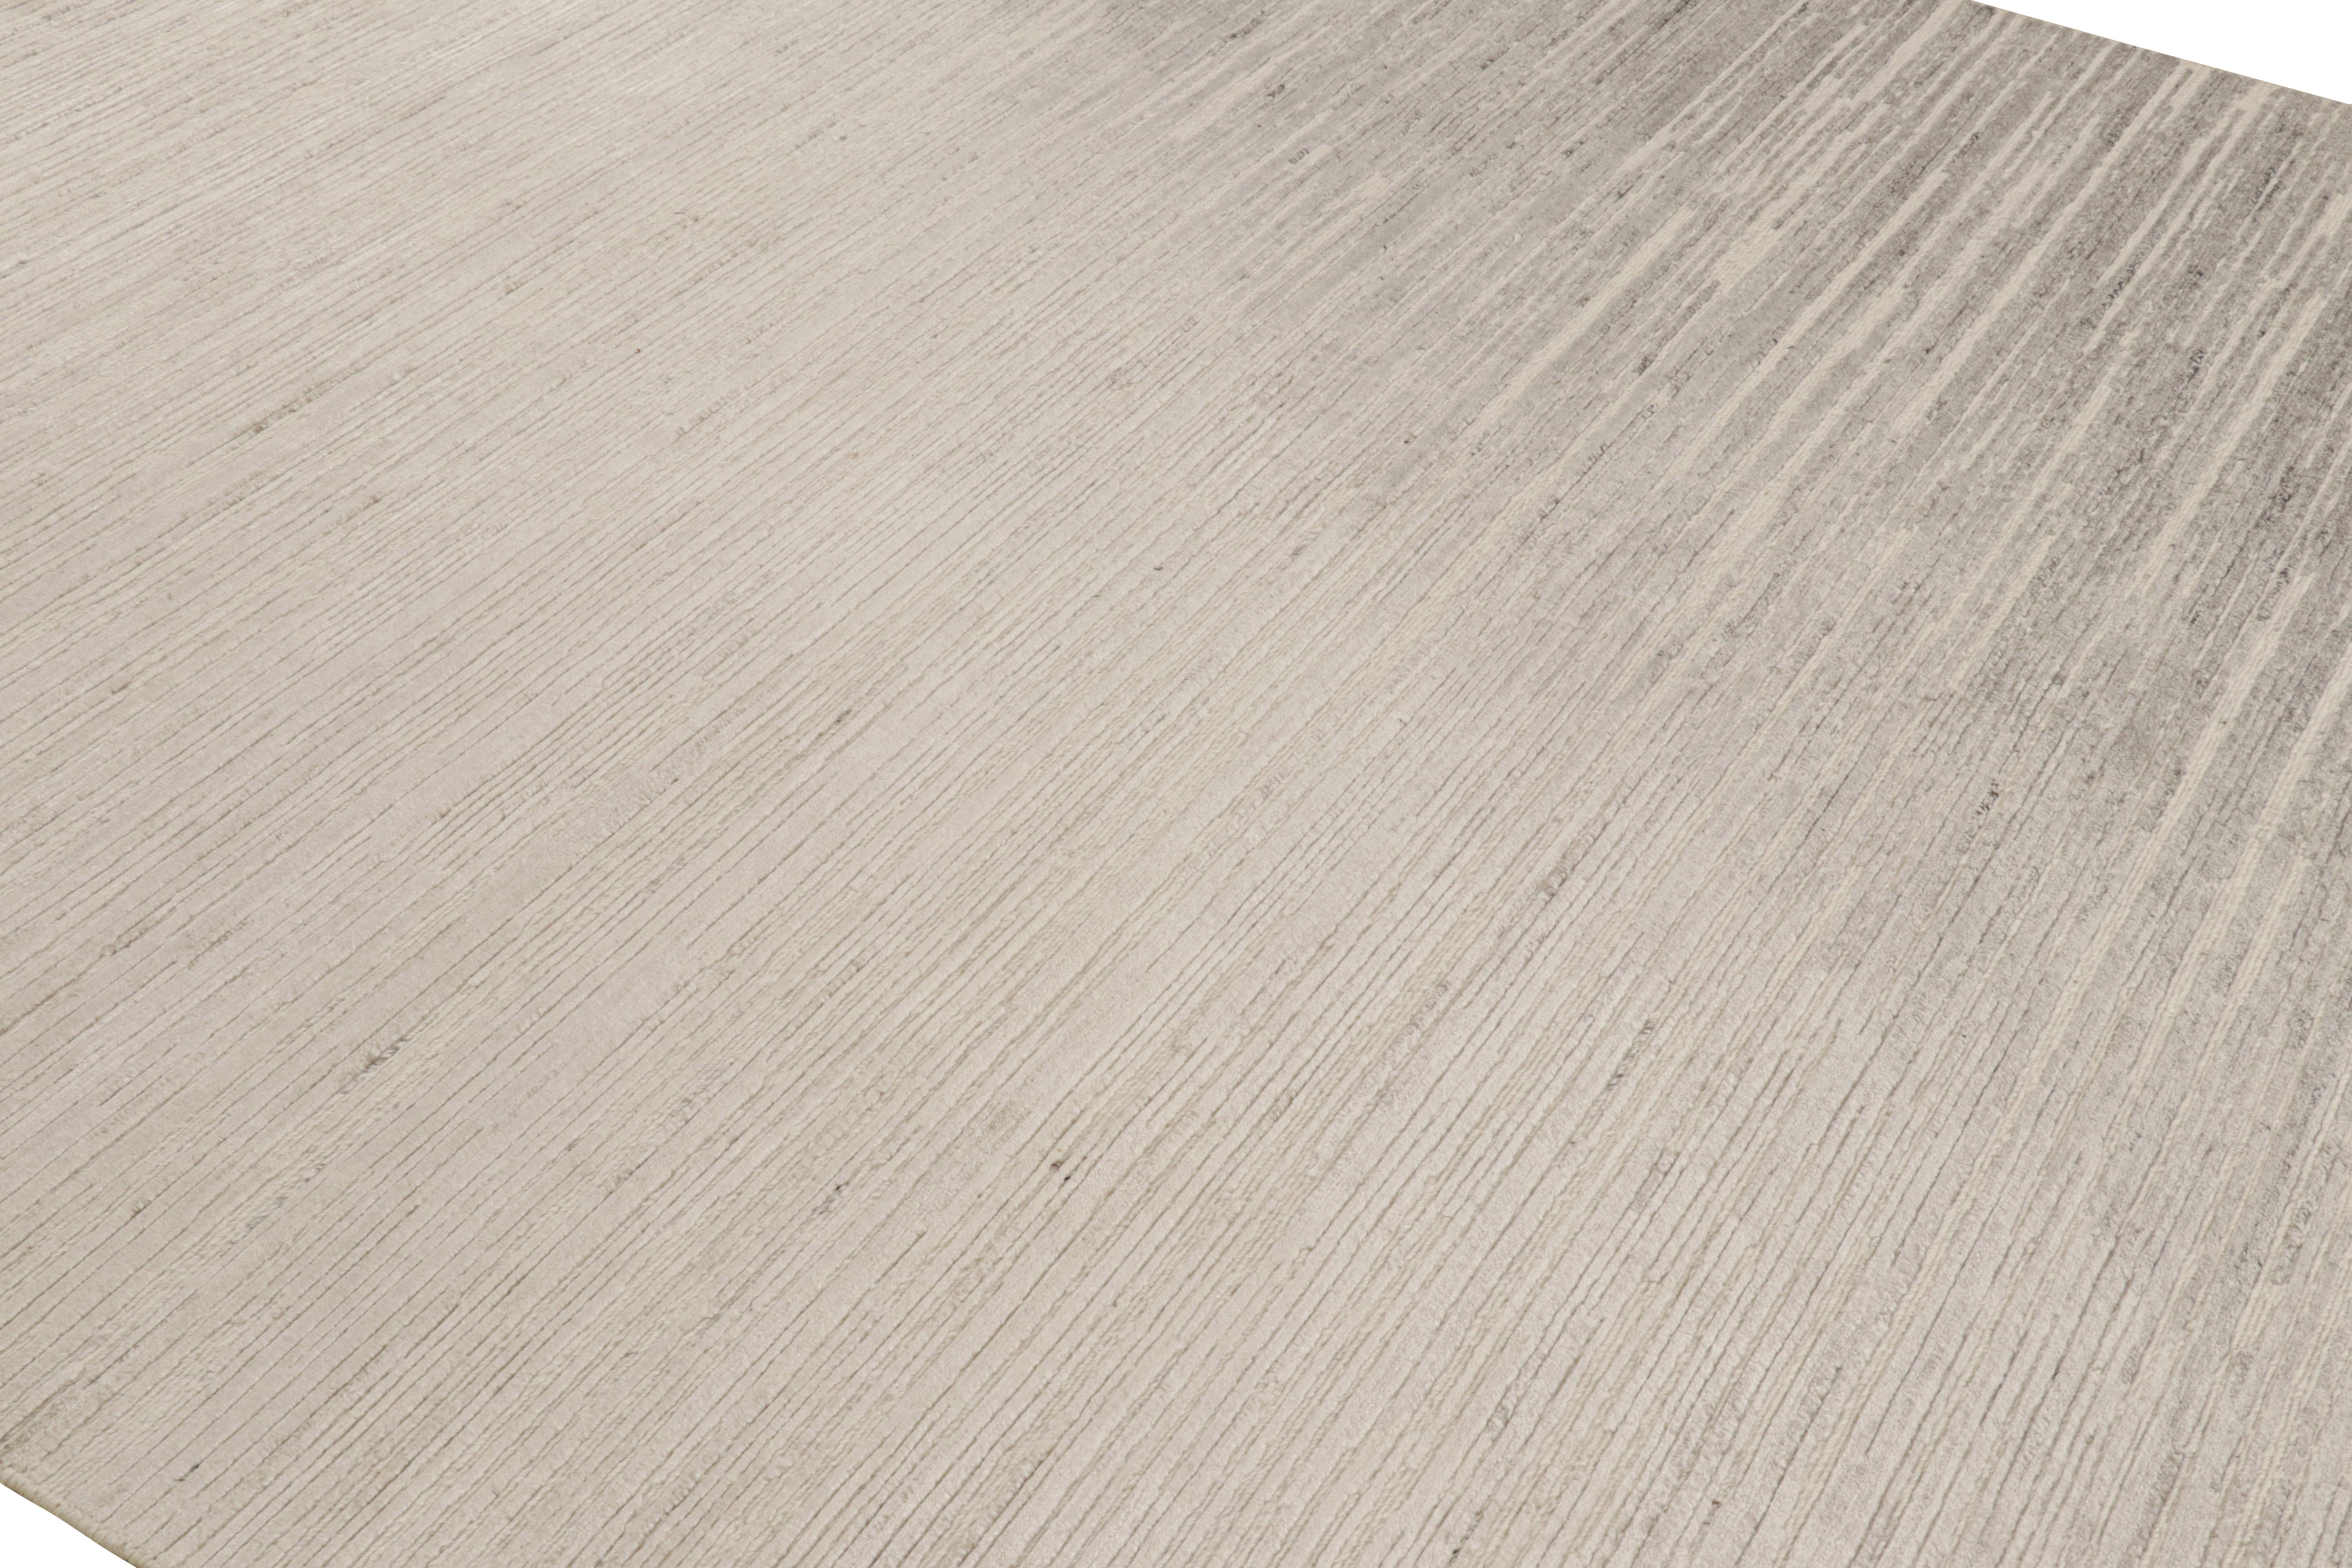 Dieser 8x10 große Teppich aus handgewebter Wolle ist ein aufregendes neues Design in der Textural-Teppichkollektion von Rug & Kilim. 

Über das Design: 

Cremeweiße und taupefarbene Grautöne unterstreichen ein subtiles Spiel von